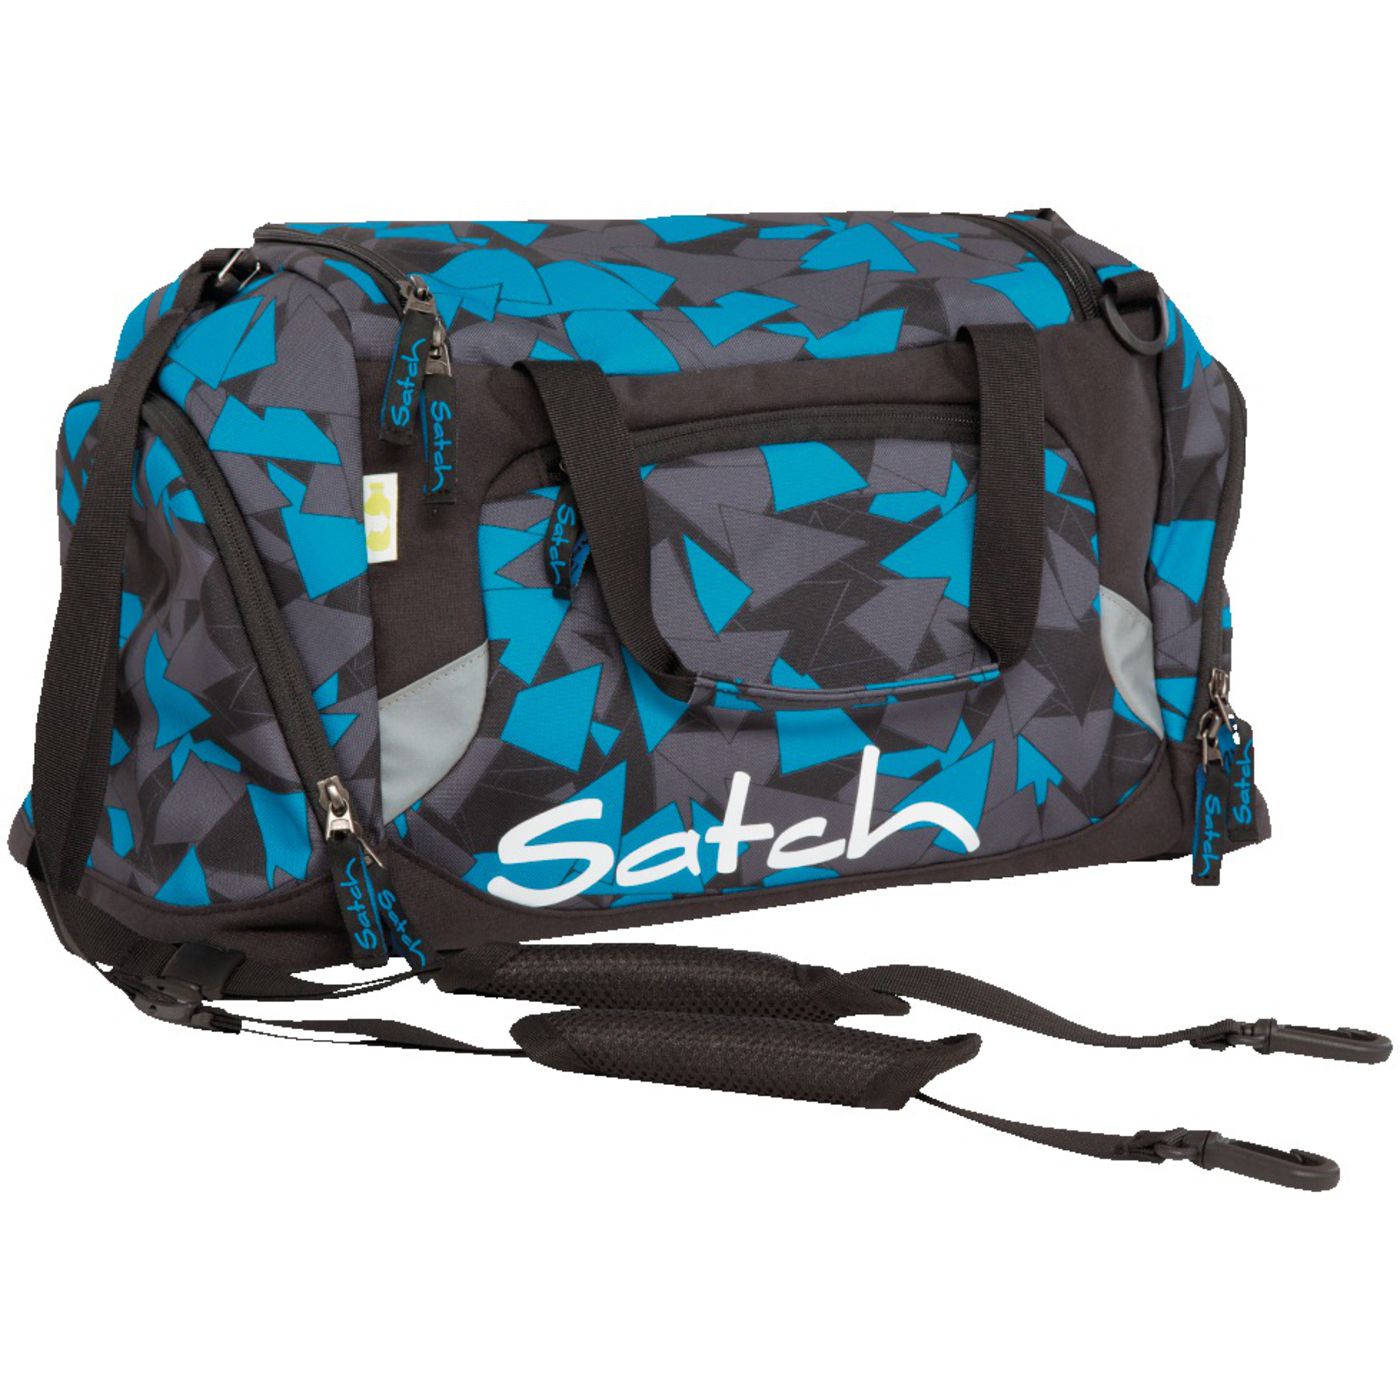 Satch спортивная сумка с ручками для переноски